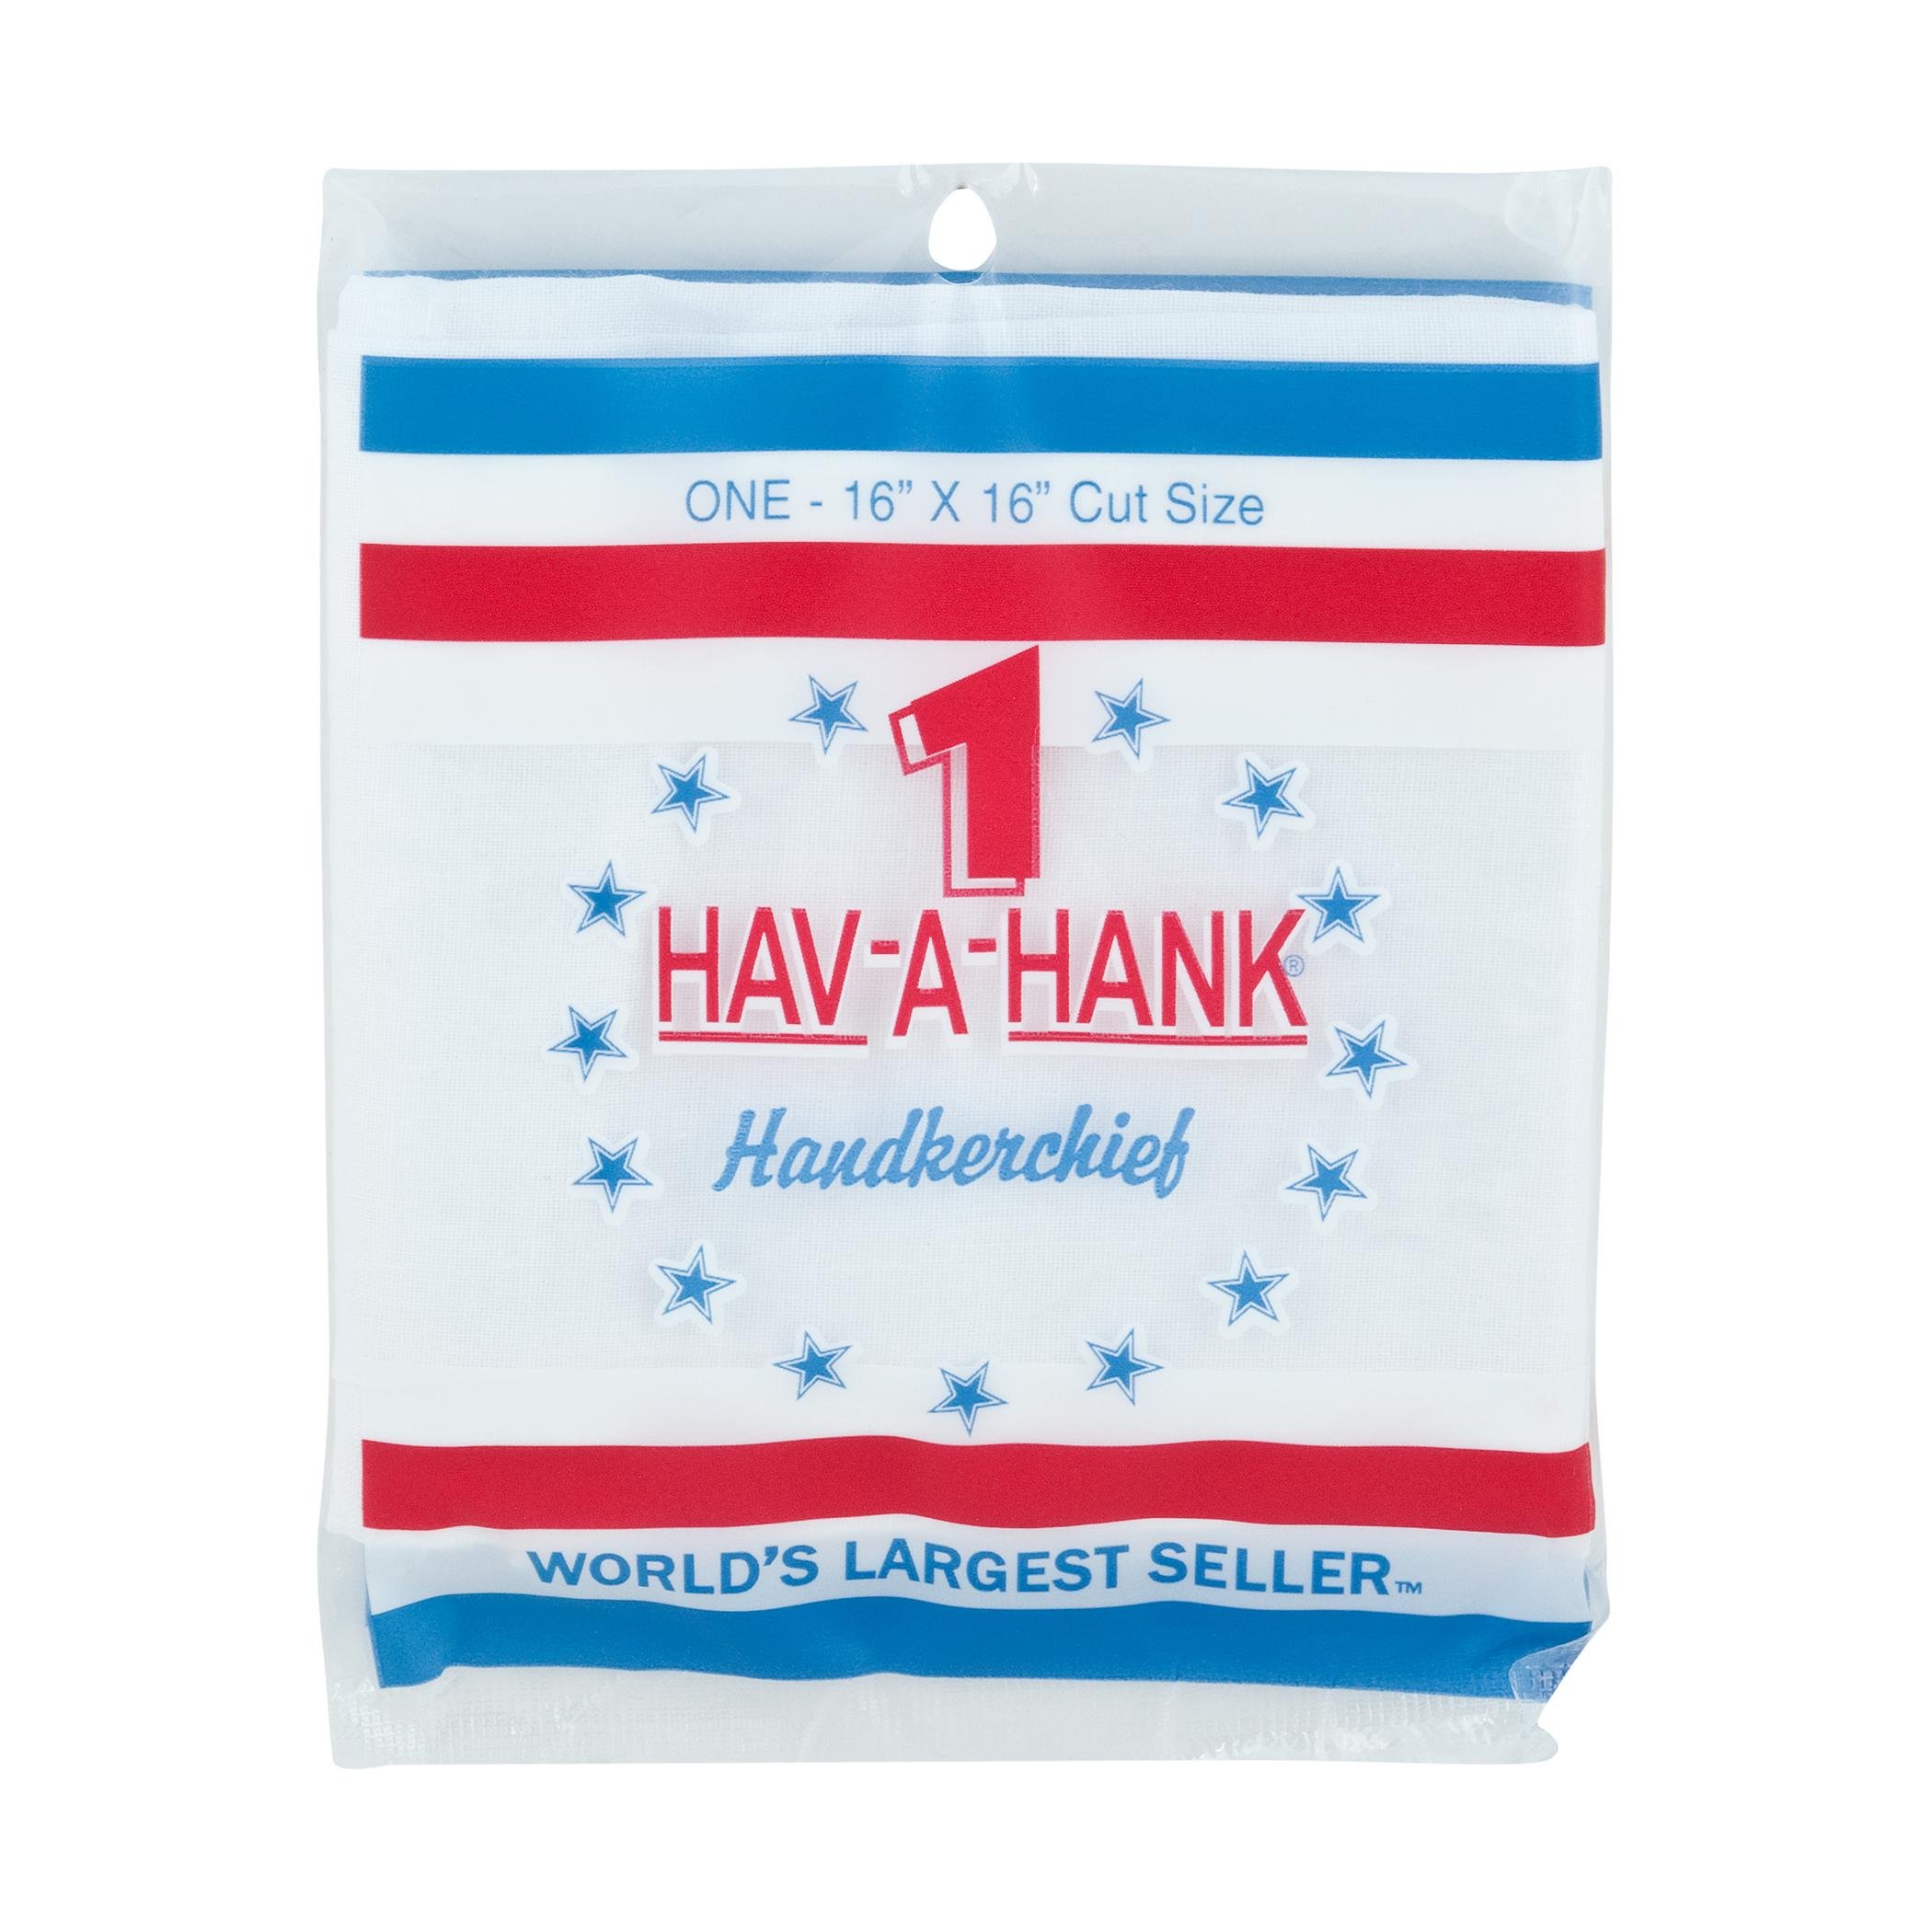  Hav- A- Hank Handkerchief